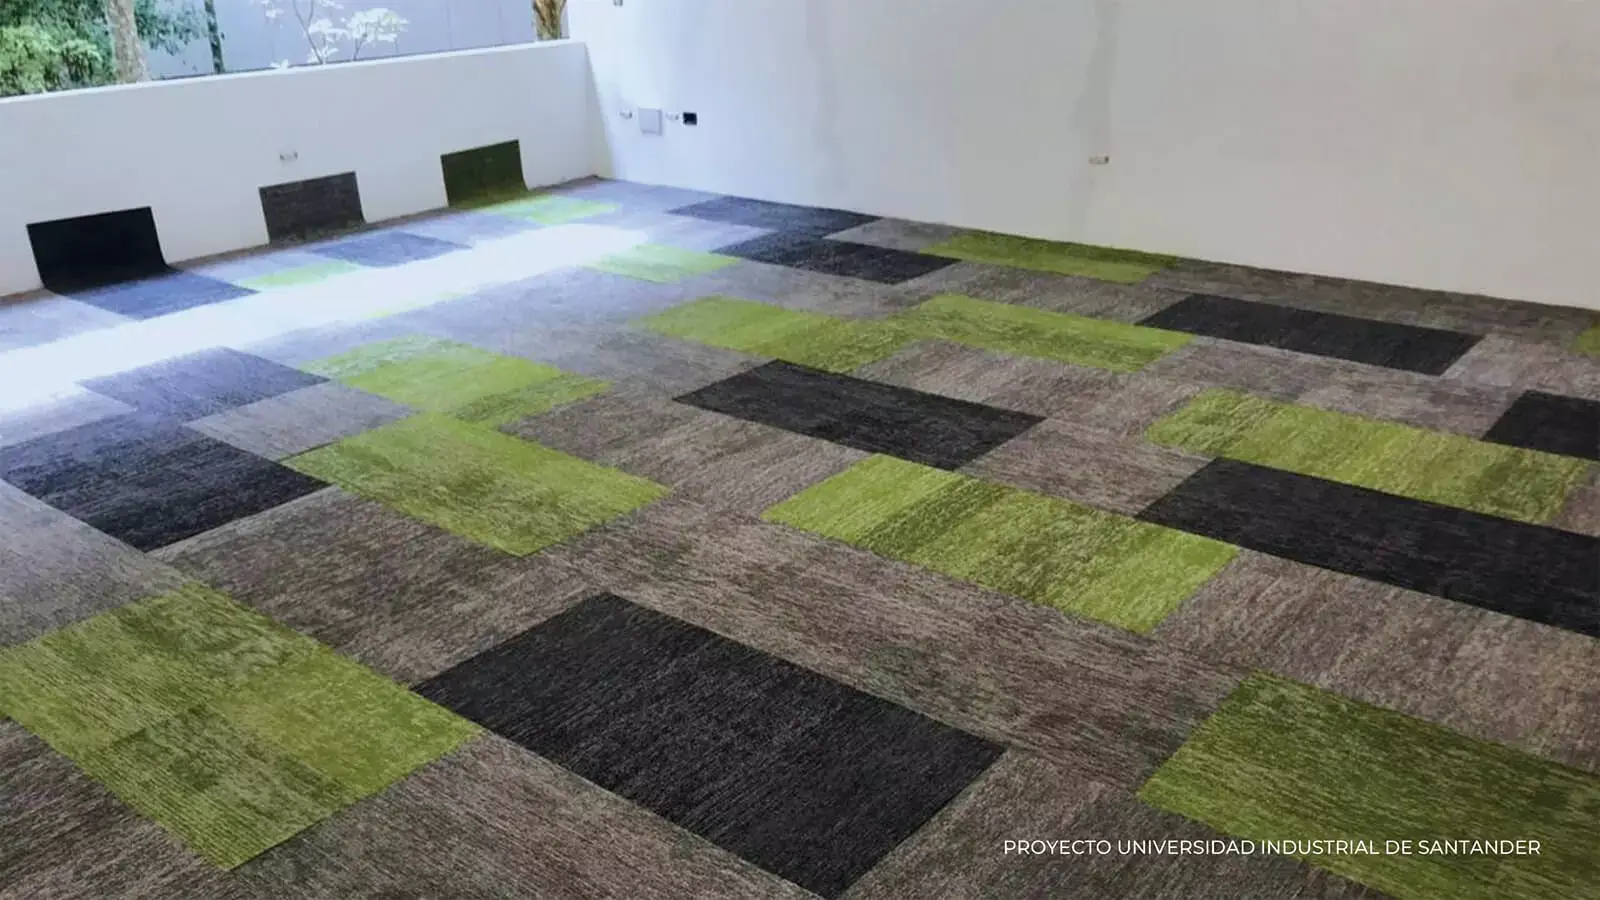 Espacio de oficina moderno que presenta una alfombra geométrica en tonos de verde, gris y negro, con un banco blanco minimalista contra la pared.